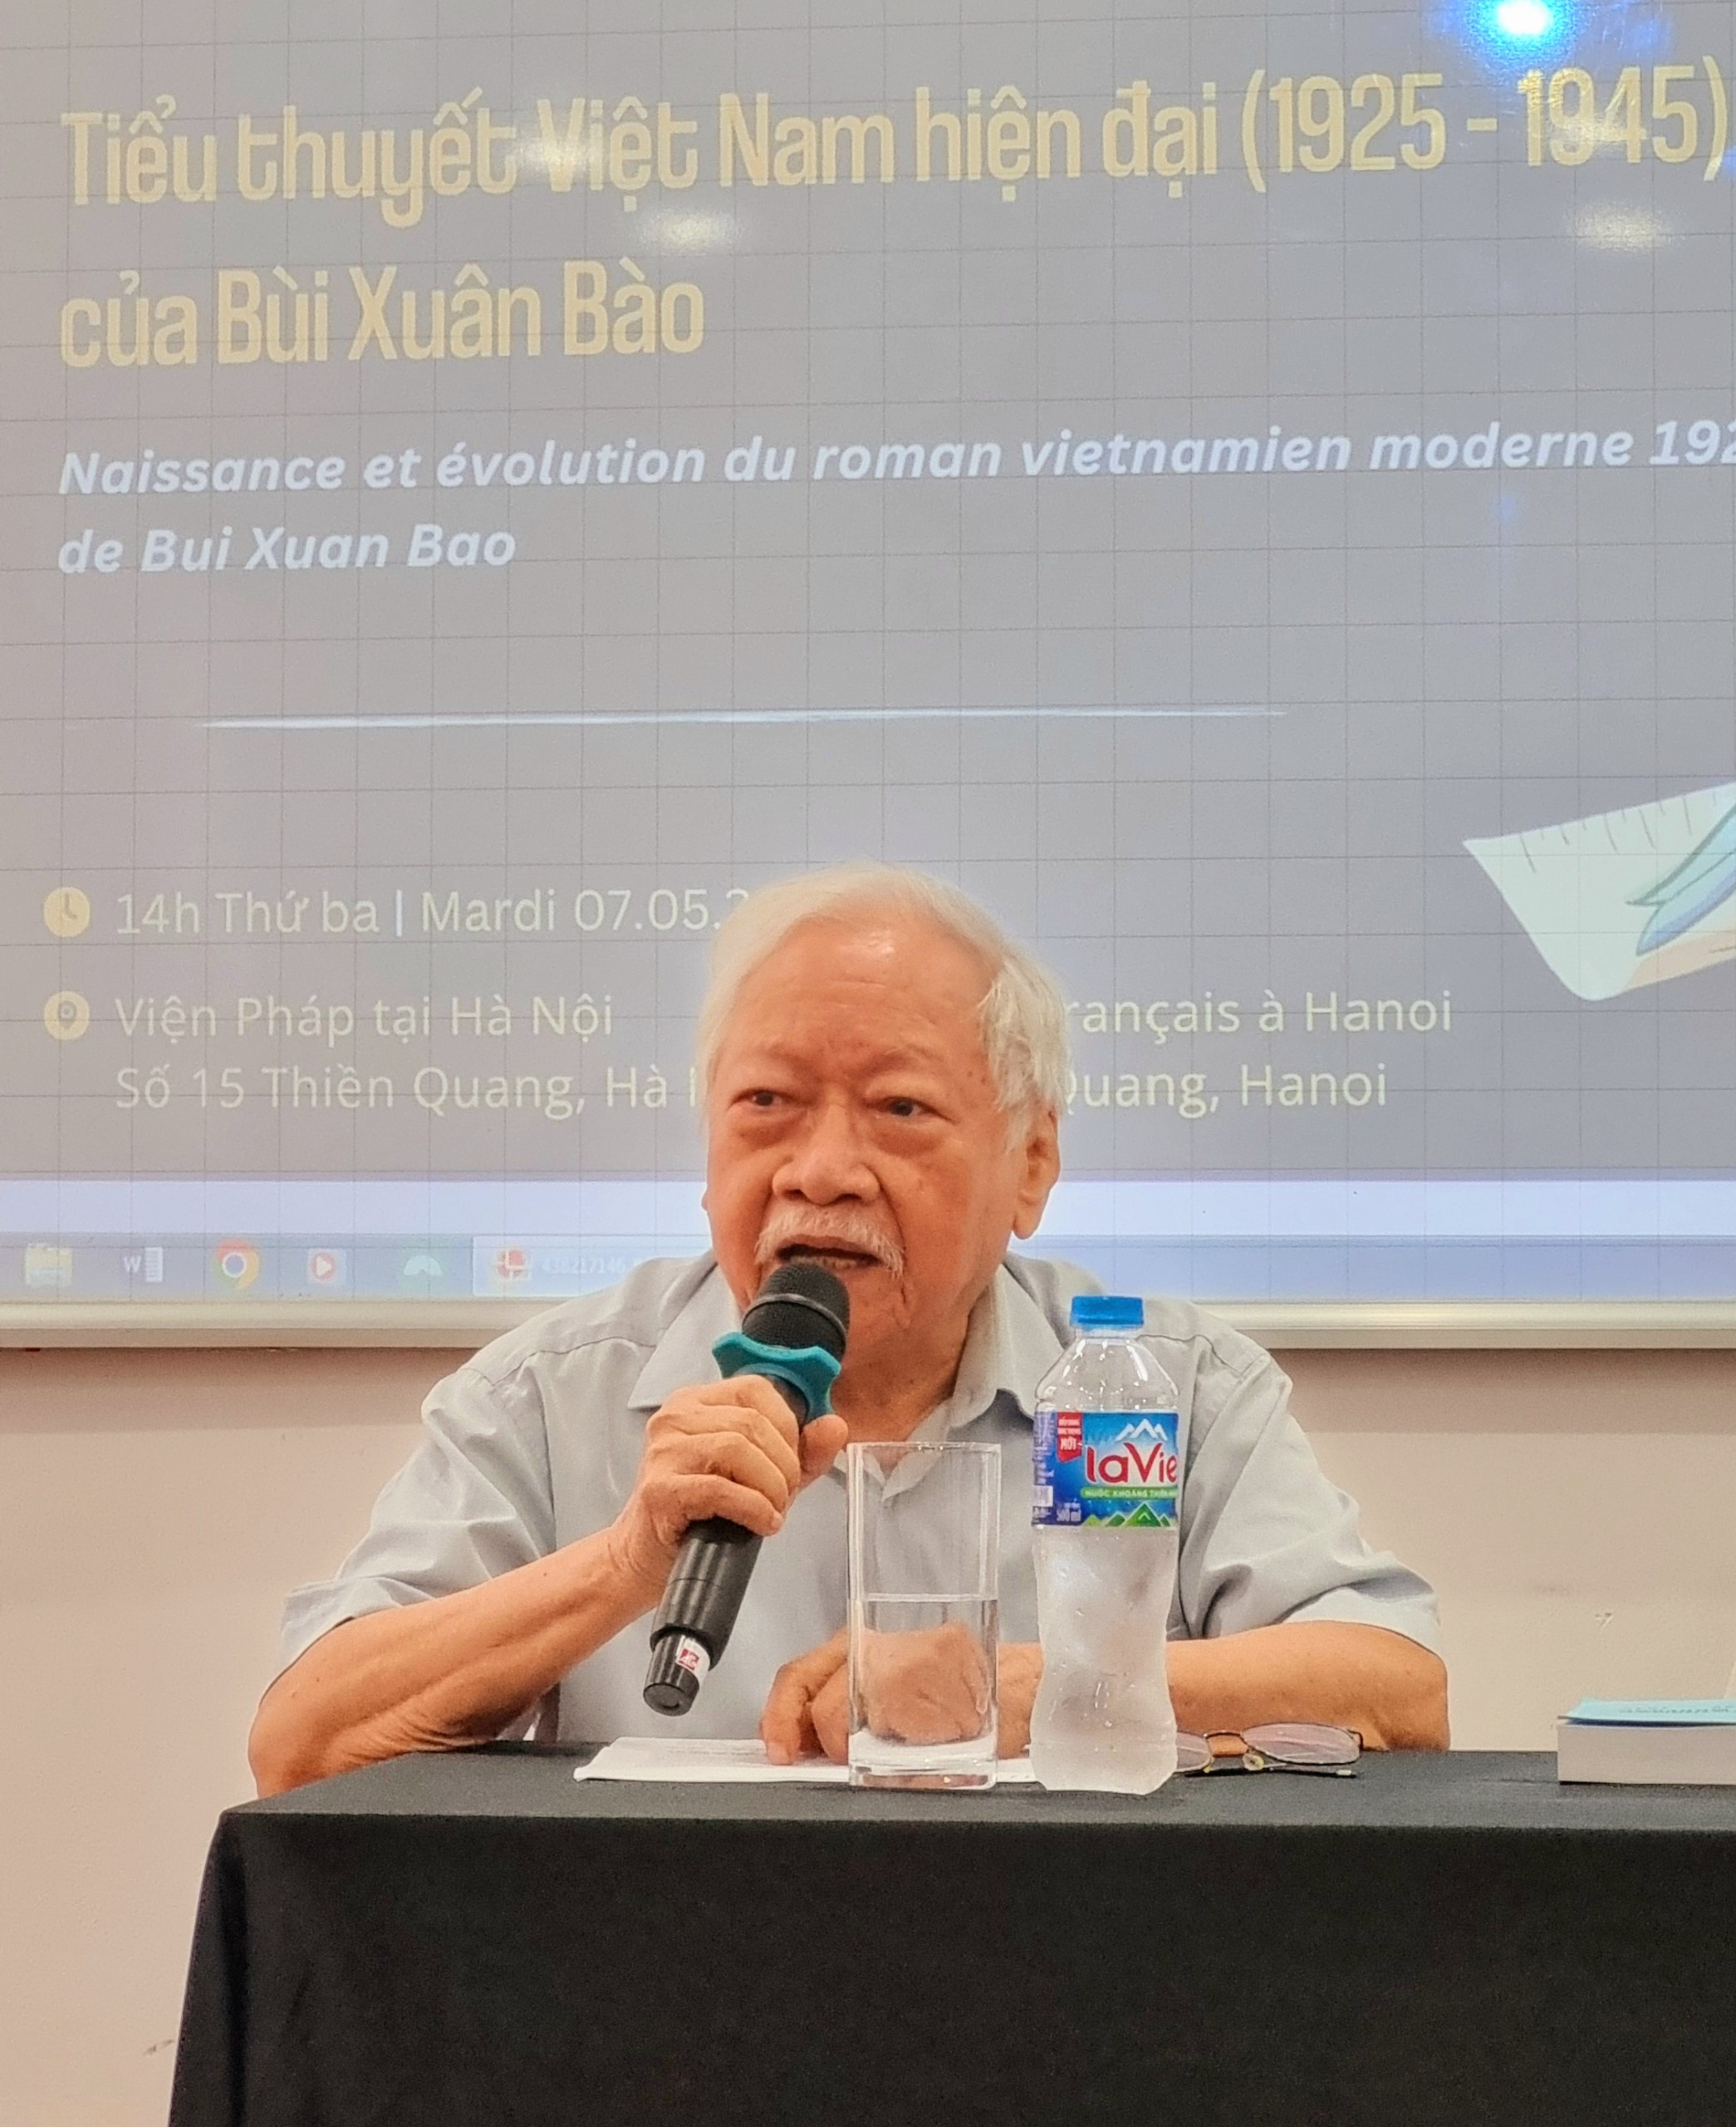 Tiểu thuyết Việt Nam qua công trình nghiên cứu công phu và nghiêm túc của Giáo sư Bùi Xuân Bào - 5